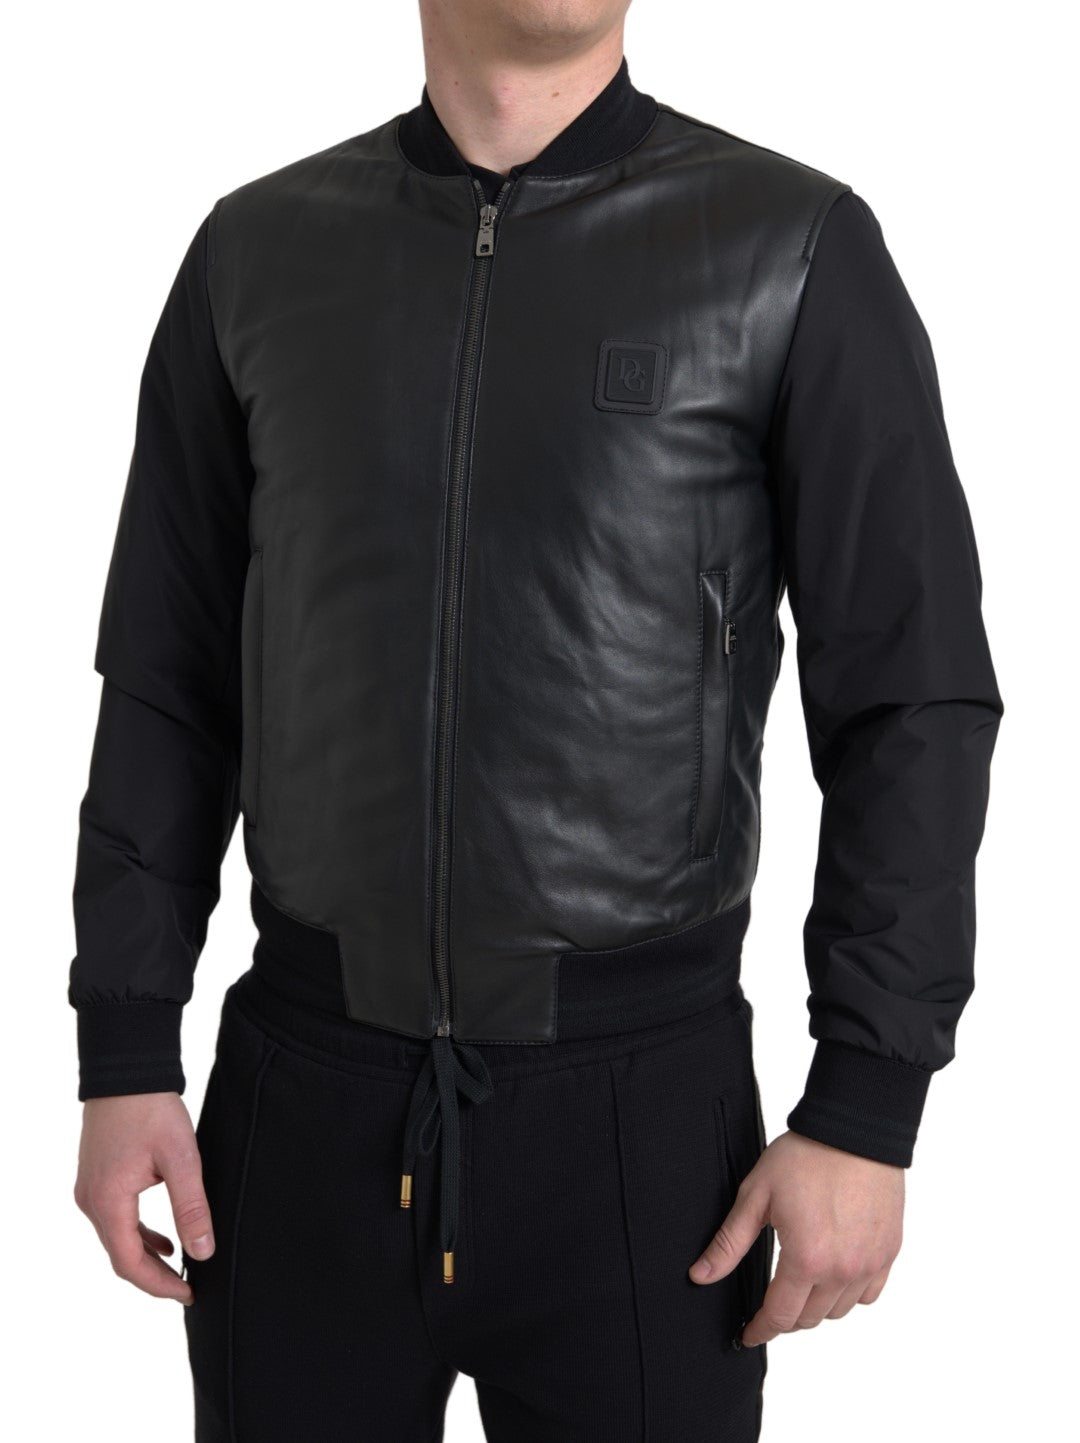 Black Polyester Full Zip Bomber Coat Jacket